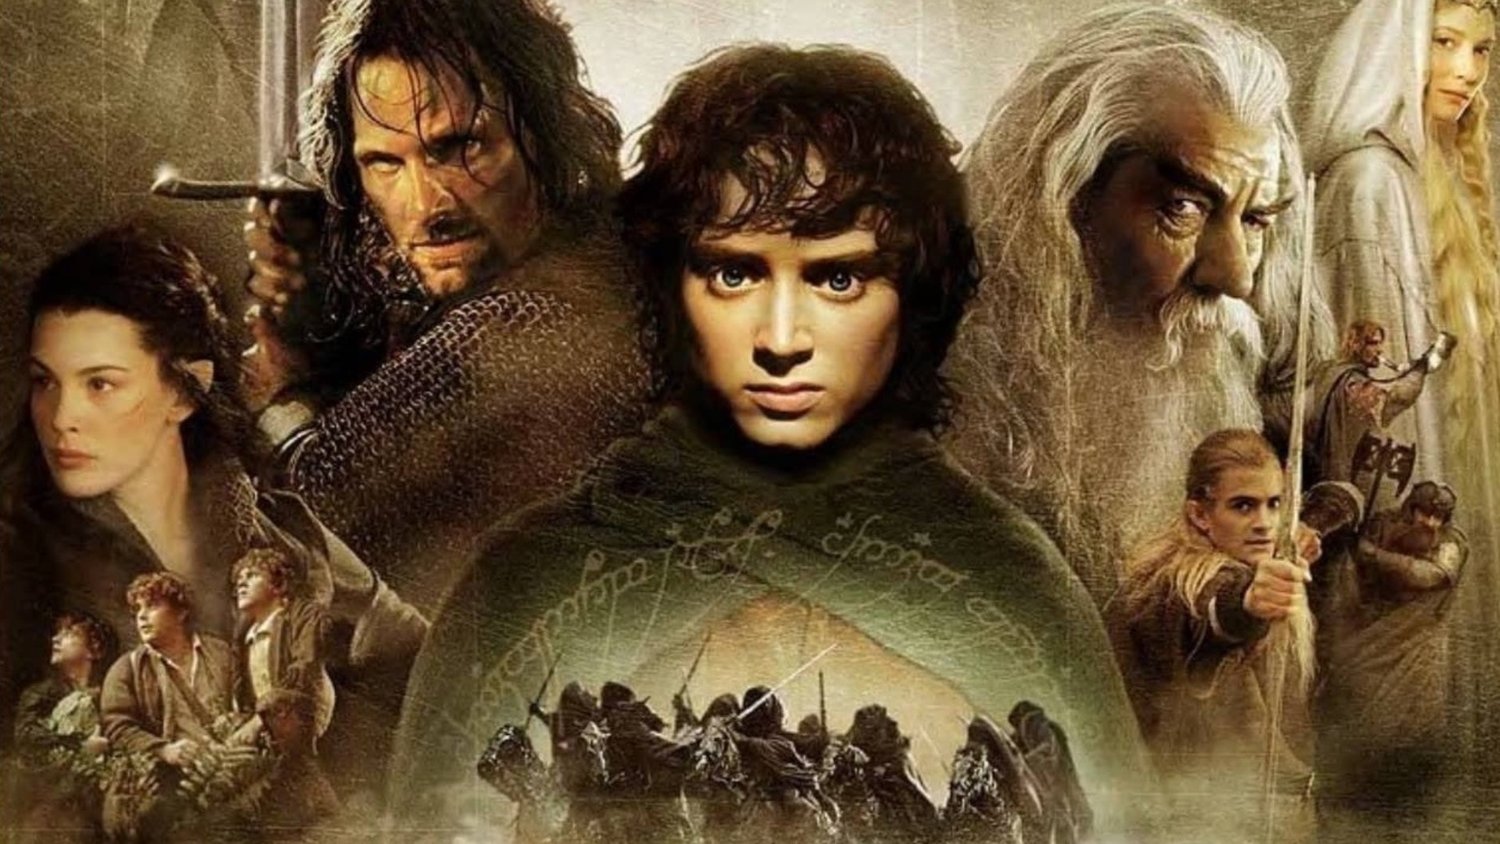 Les inspirations du monde réel derrière LE SEIGNEUR DES ANNEAUX de JRR Tolkien explorées en vidéo